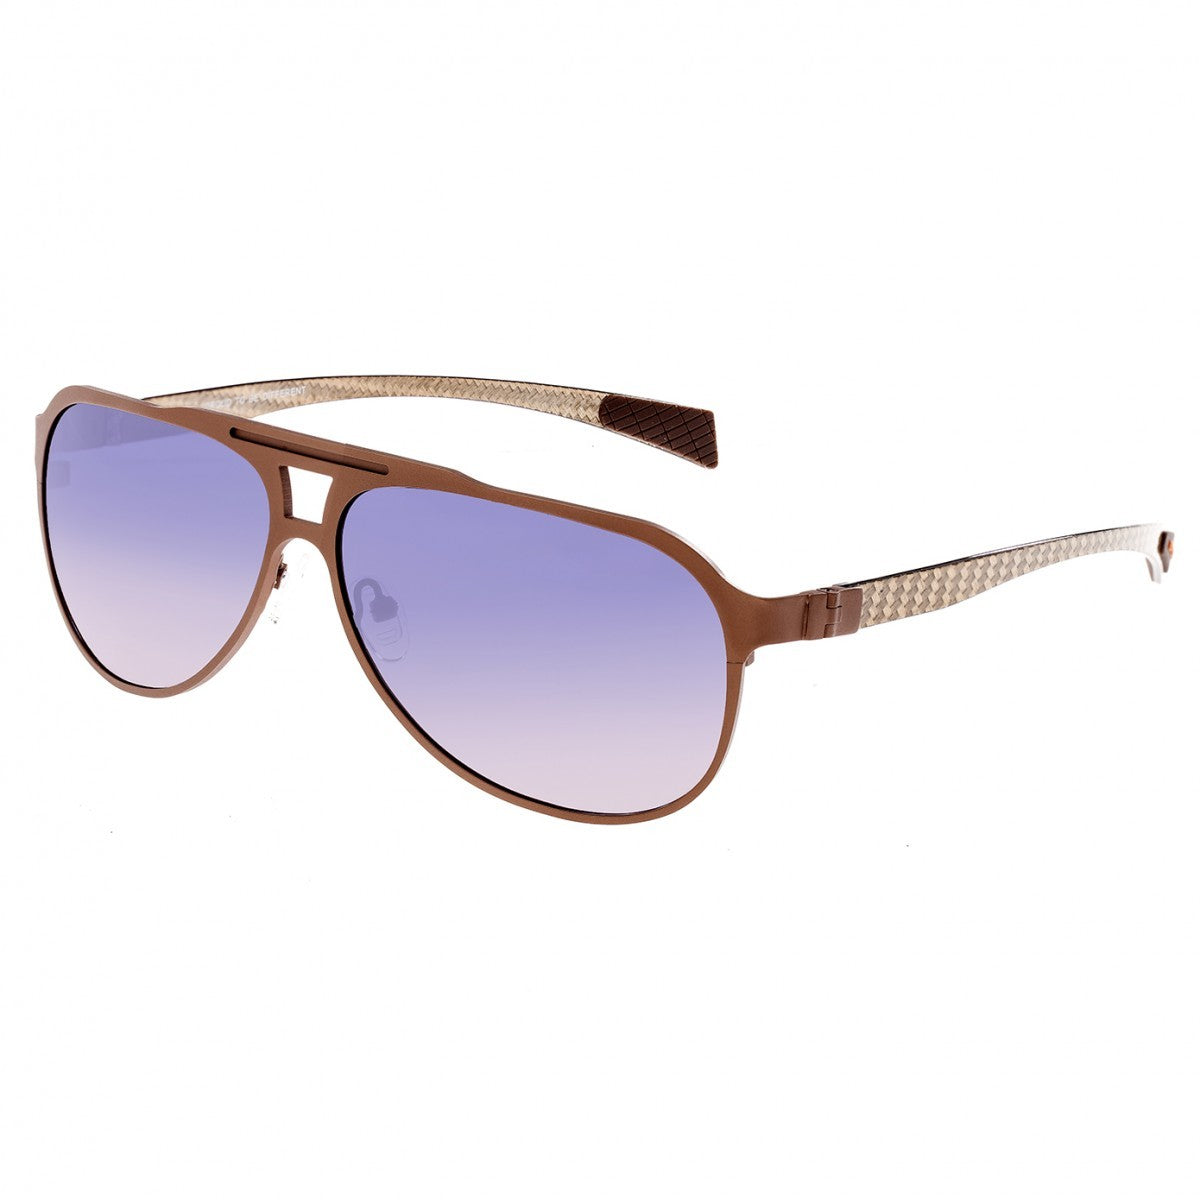 Breed Apollo Titanium and Carbon Fiber Polarized Sunglasses - Brown/Purple - BSG006CP